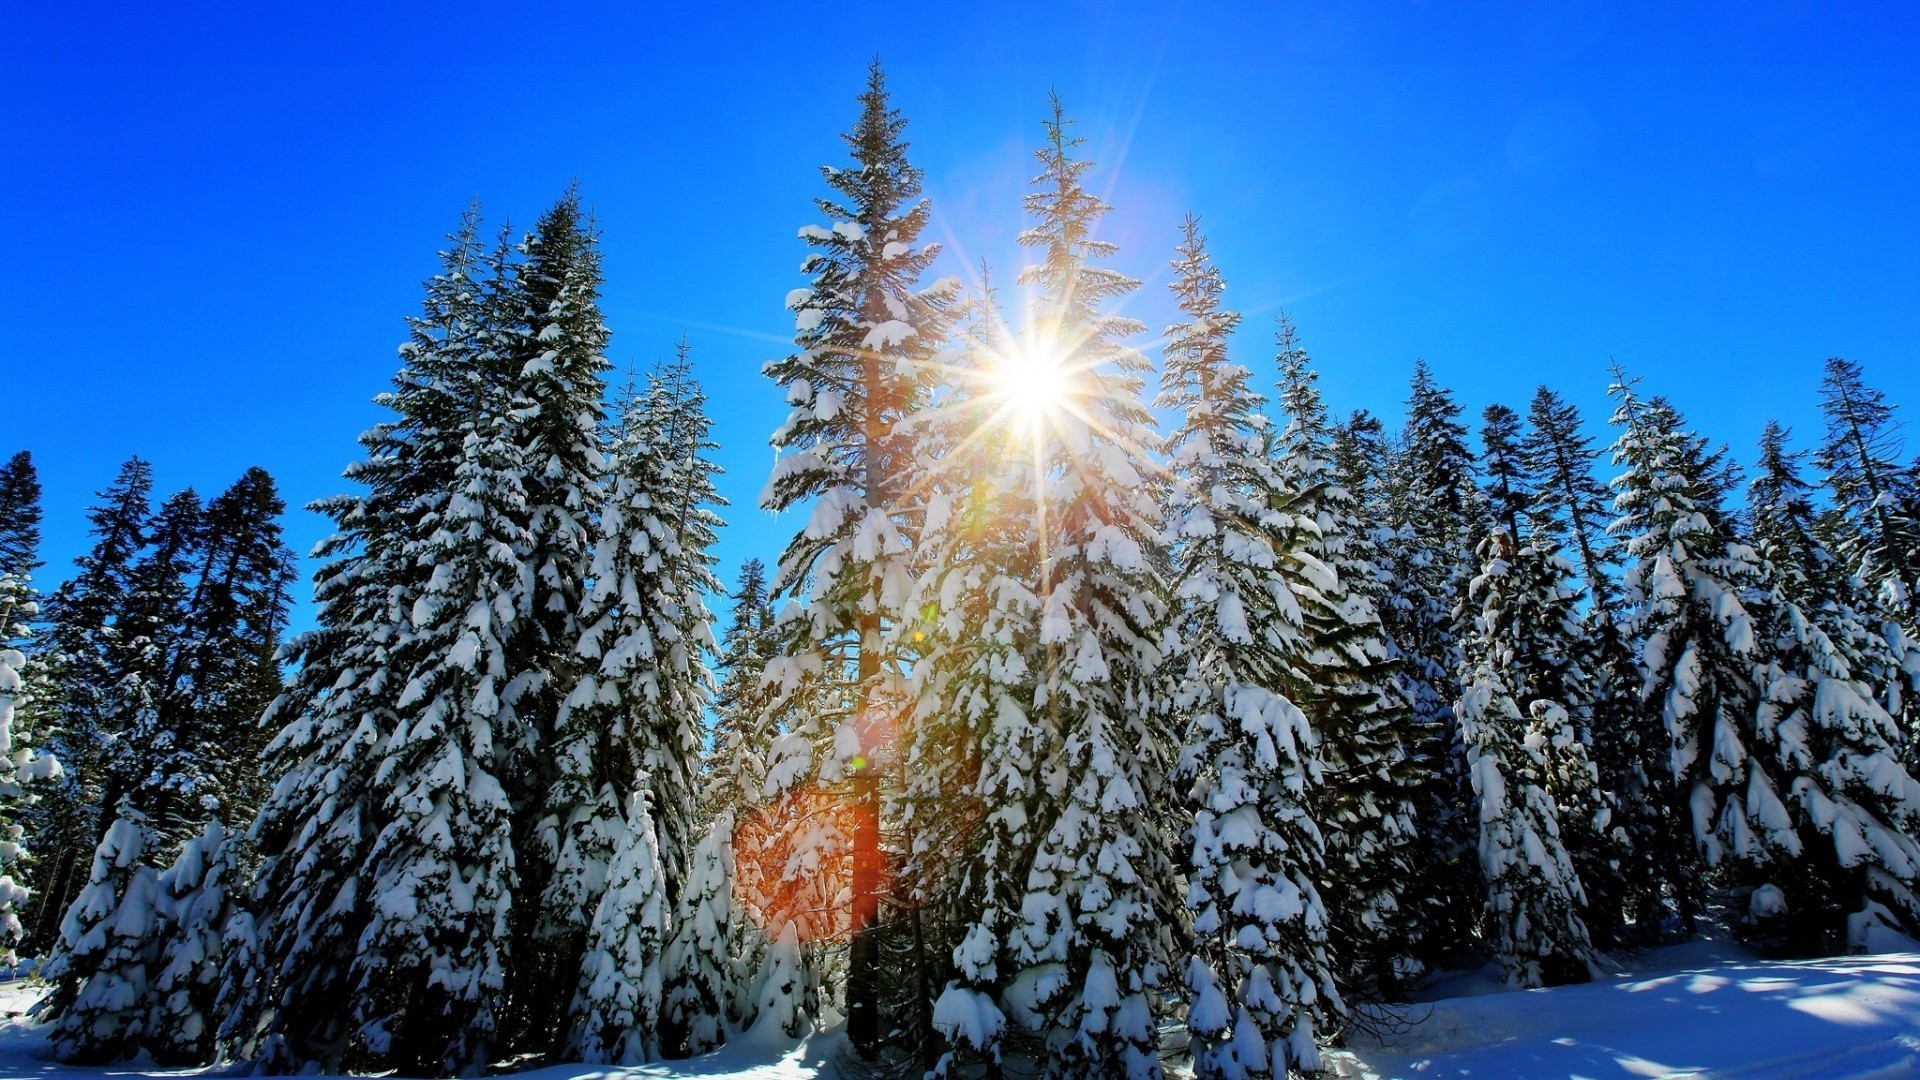 зима снег древесины мороз сезон дерево холодная пихта пейзаж сосна природа замороженные живописный эвергрин хорошую погоду лед ели хвойные снег-белый